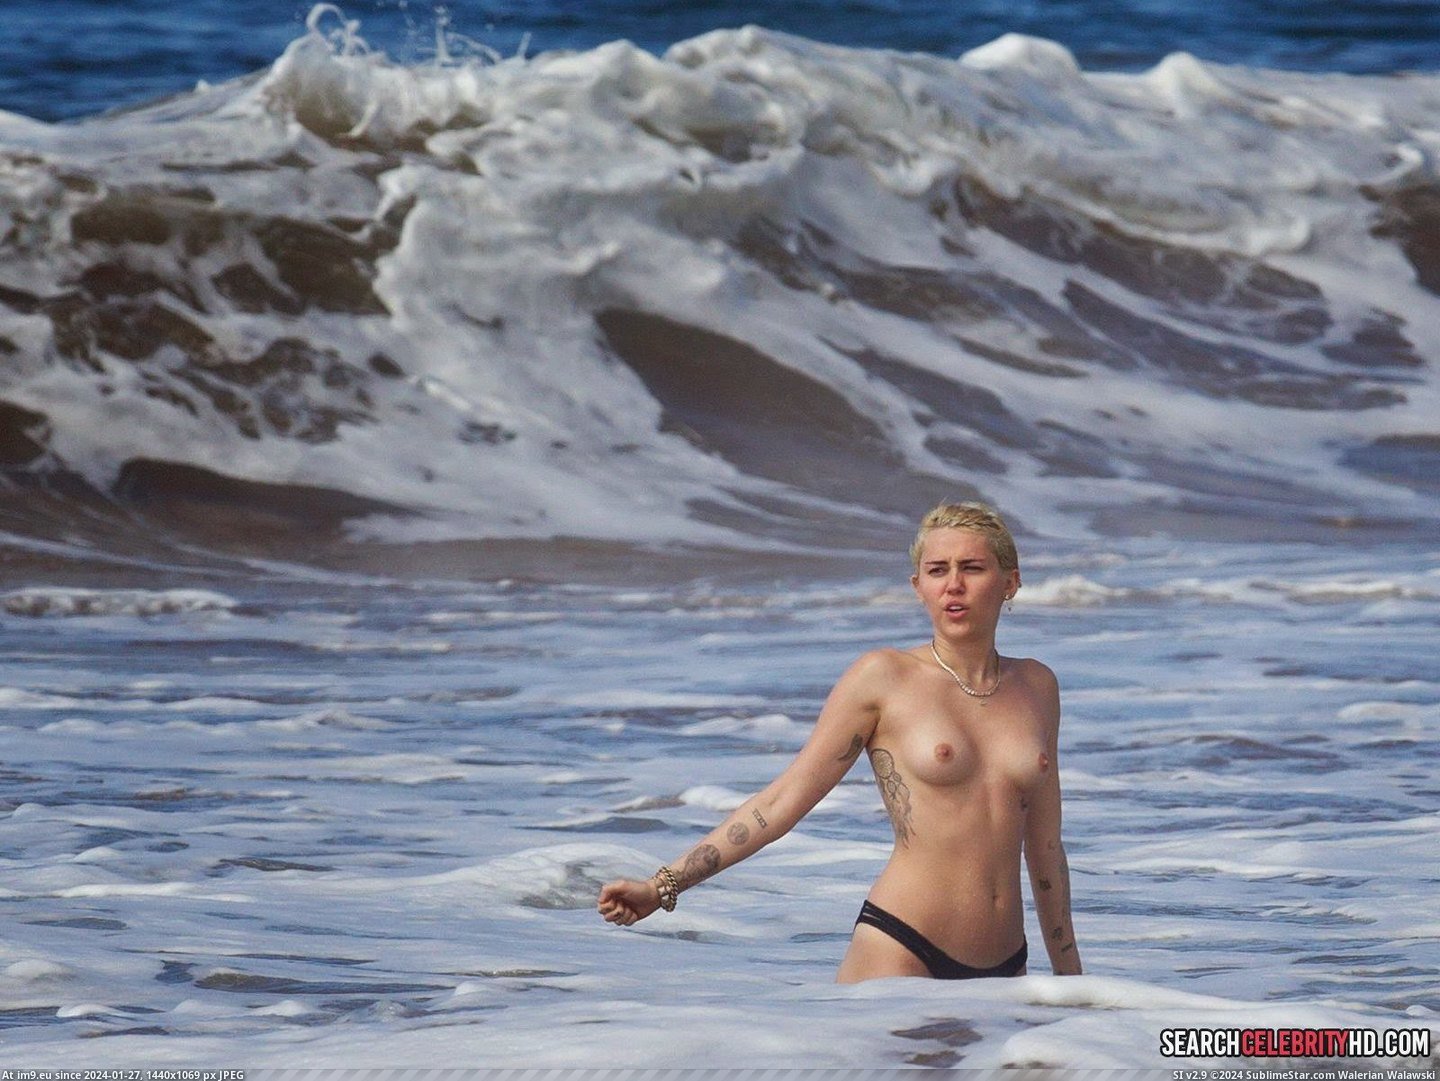 Miley Cyrus Topless Bikini Candid Photos In Hawaii (24) (in Miley Cyrus Topless Bikini Candid Photos In Hawaii)